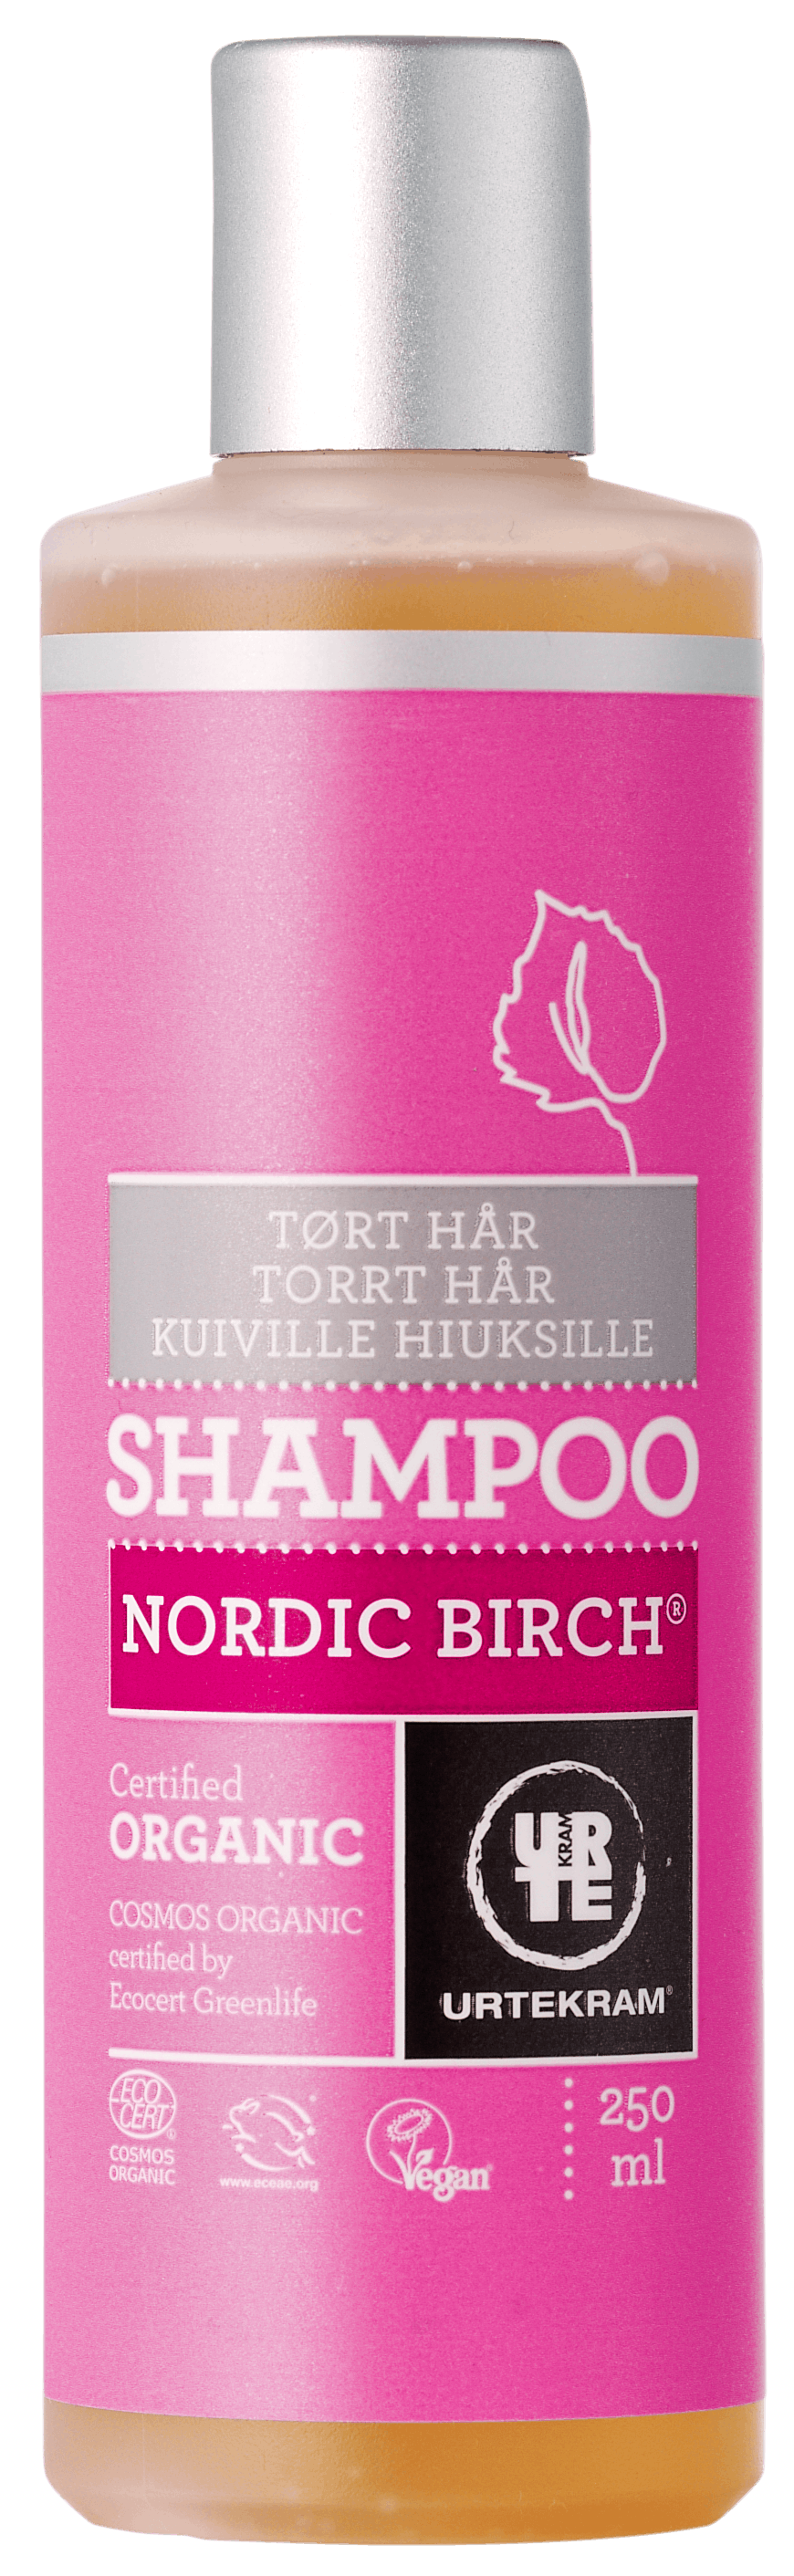 Måge Bestil slap af Urtekram Nordic Birch Shampoo Tørt Hår 250 ml - 35.95 kr